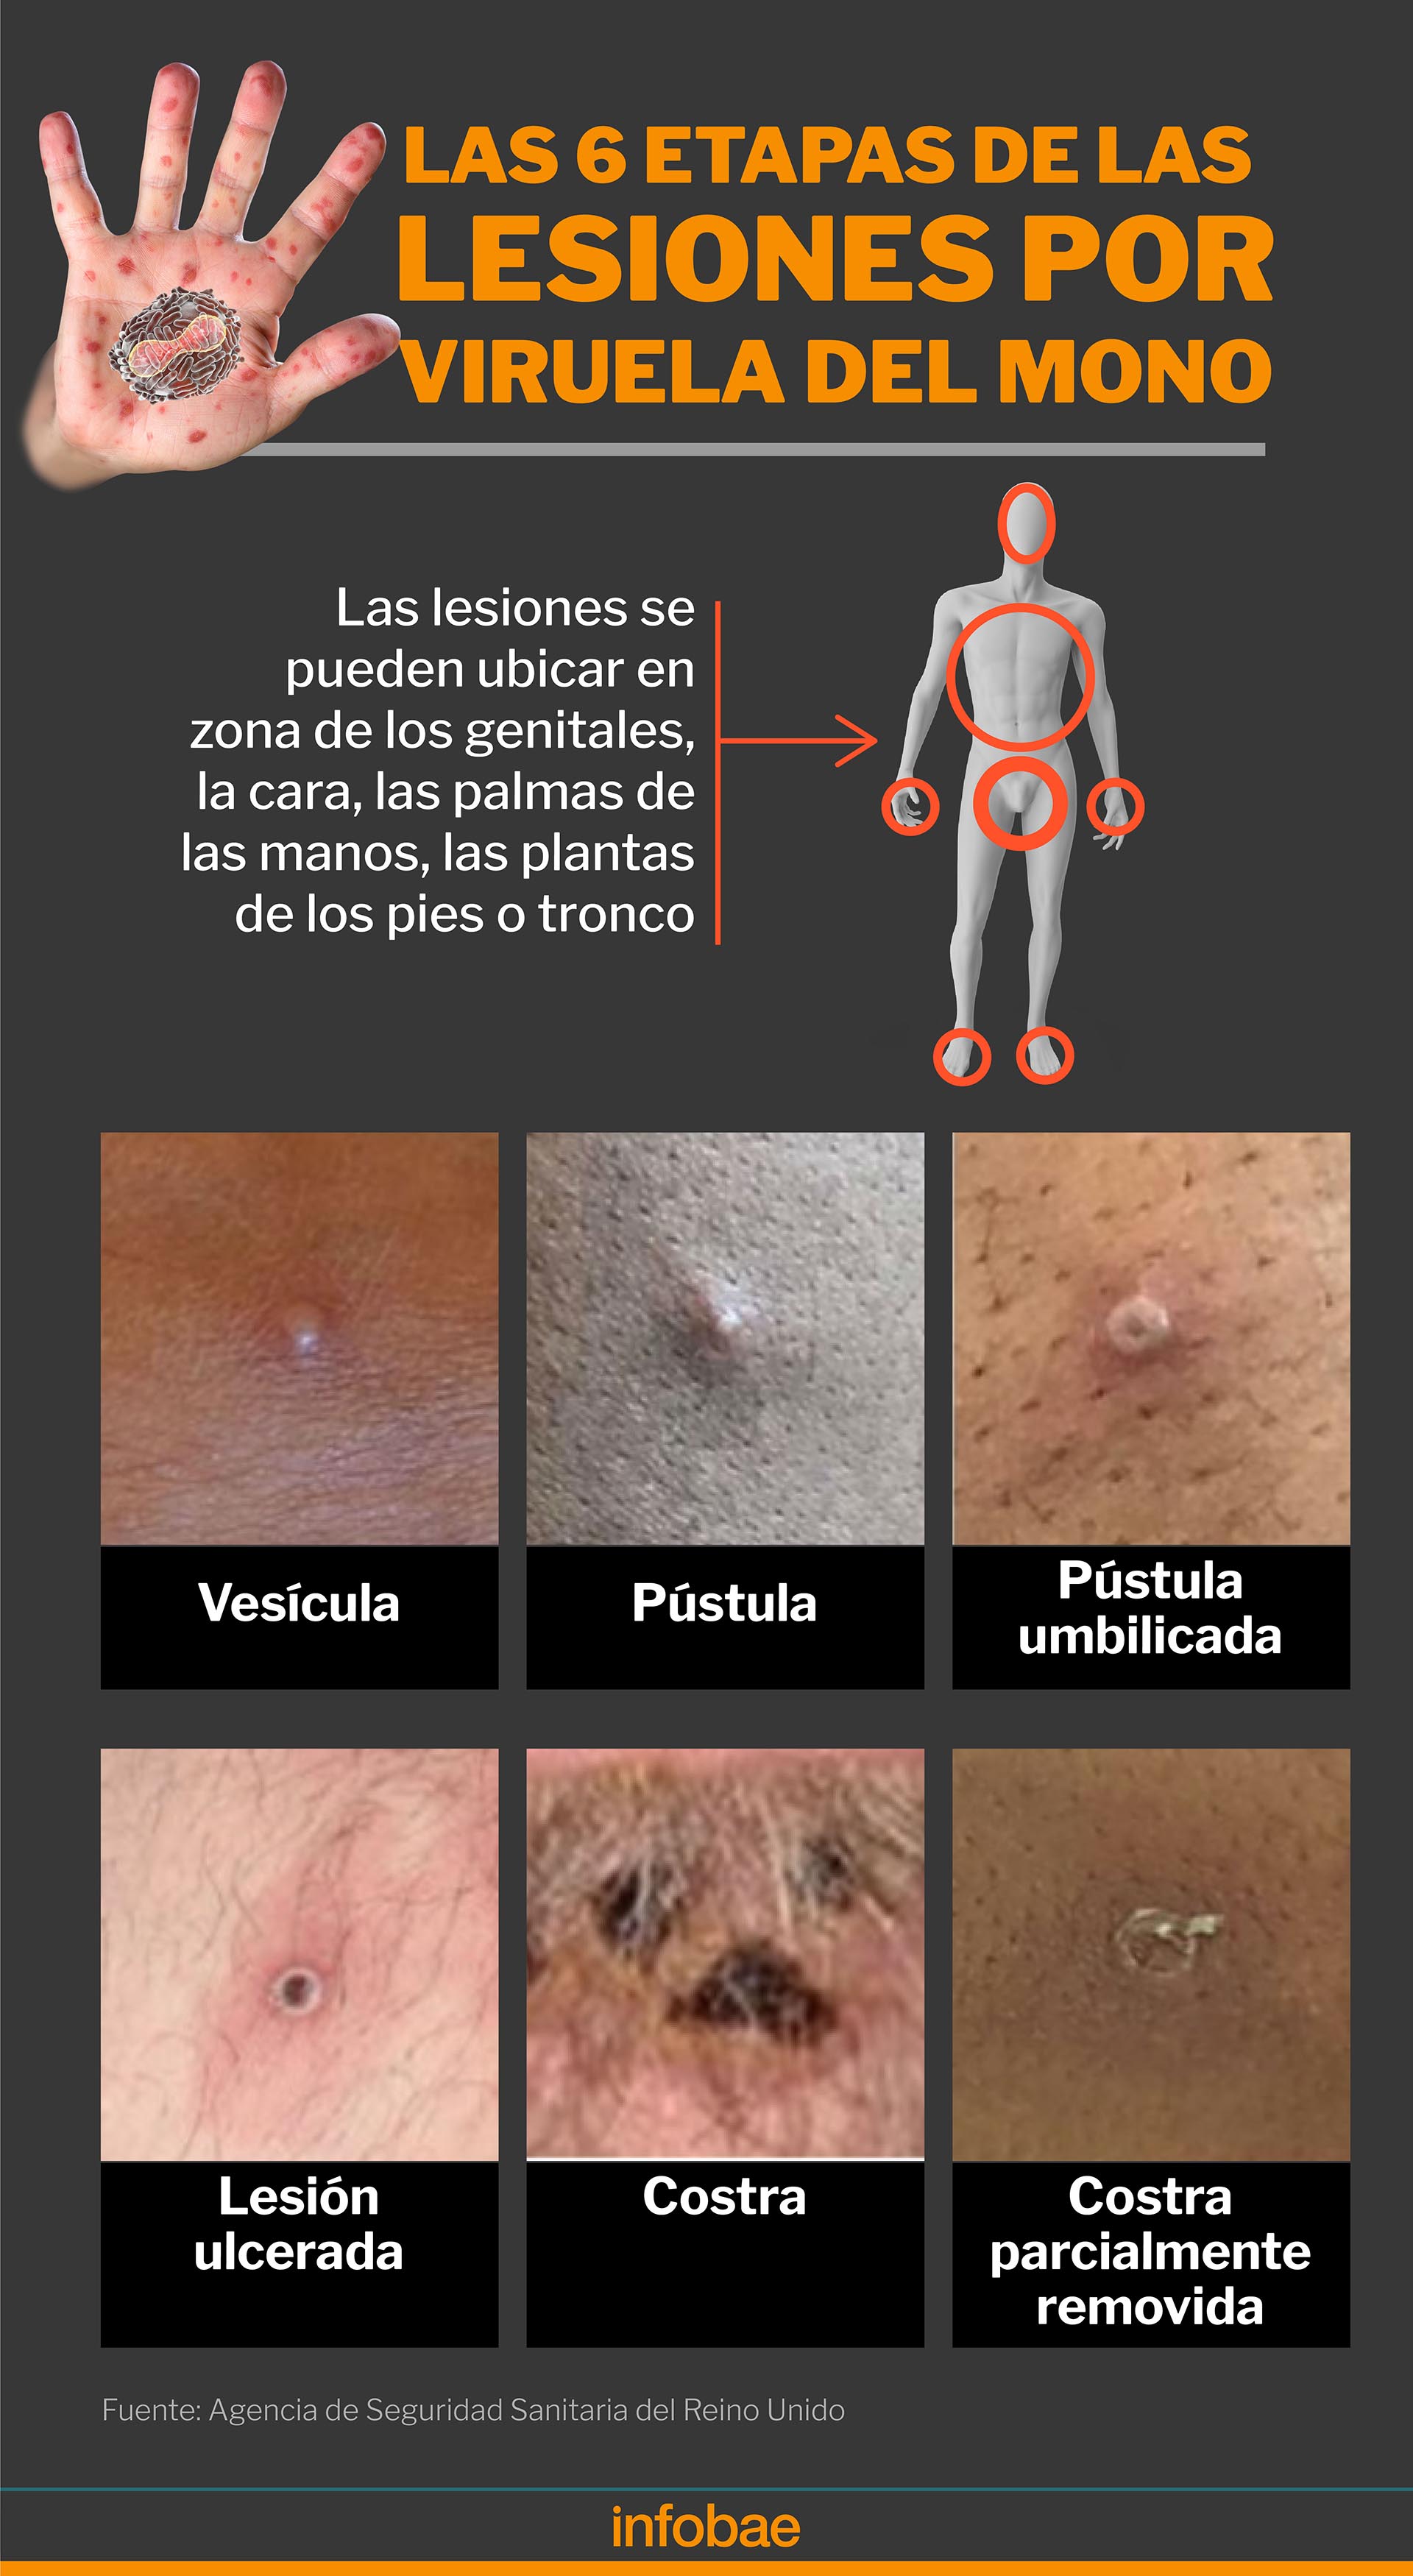 Las lesiones en la piel por la viruela atraviesan 6 etapas, pero no en todos los pacientes se presentan/Marcelo Regalado